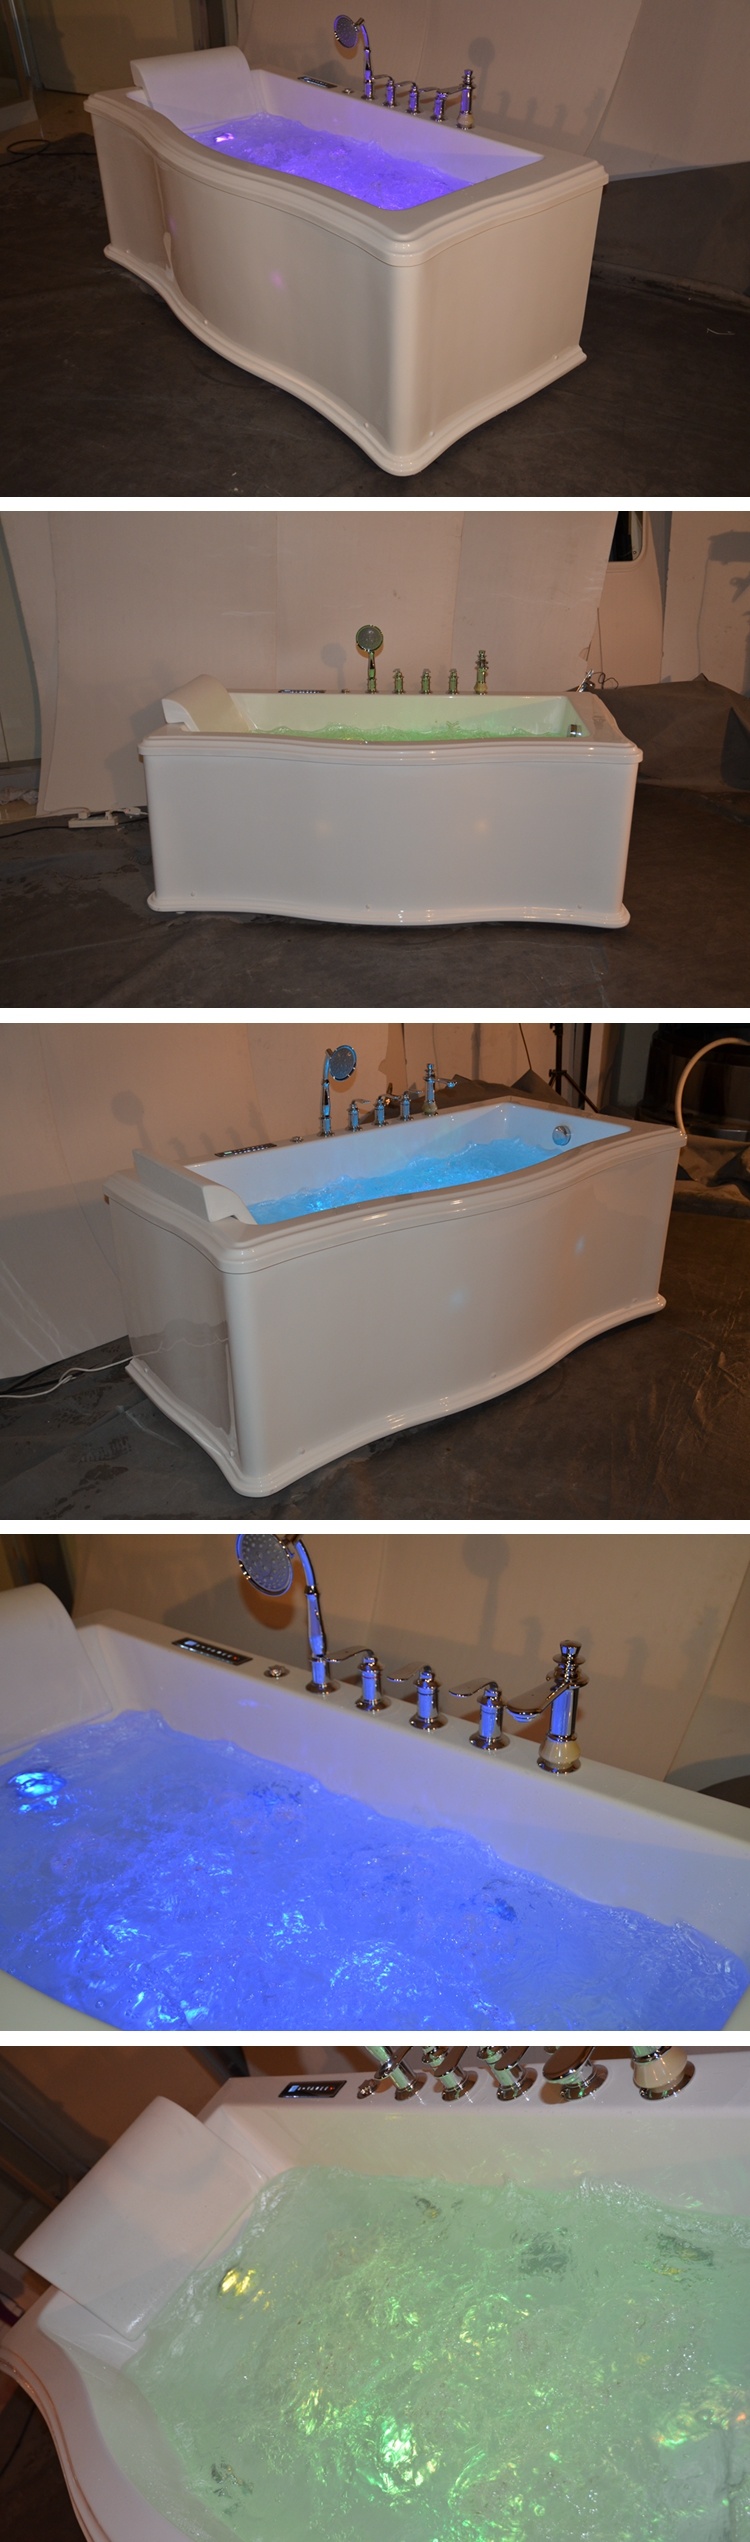 Unique Design Indoor Whirlpool Single Person Jacuzzi Bathtub Foshan China